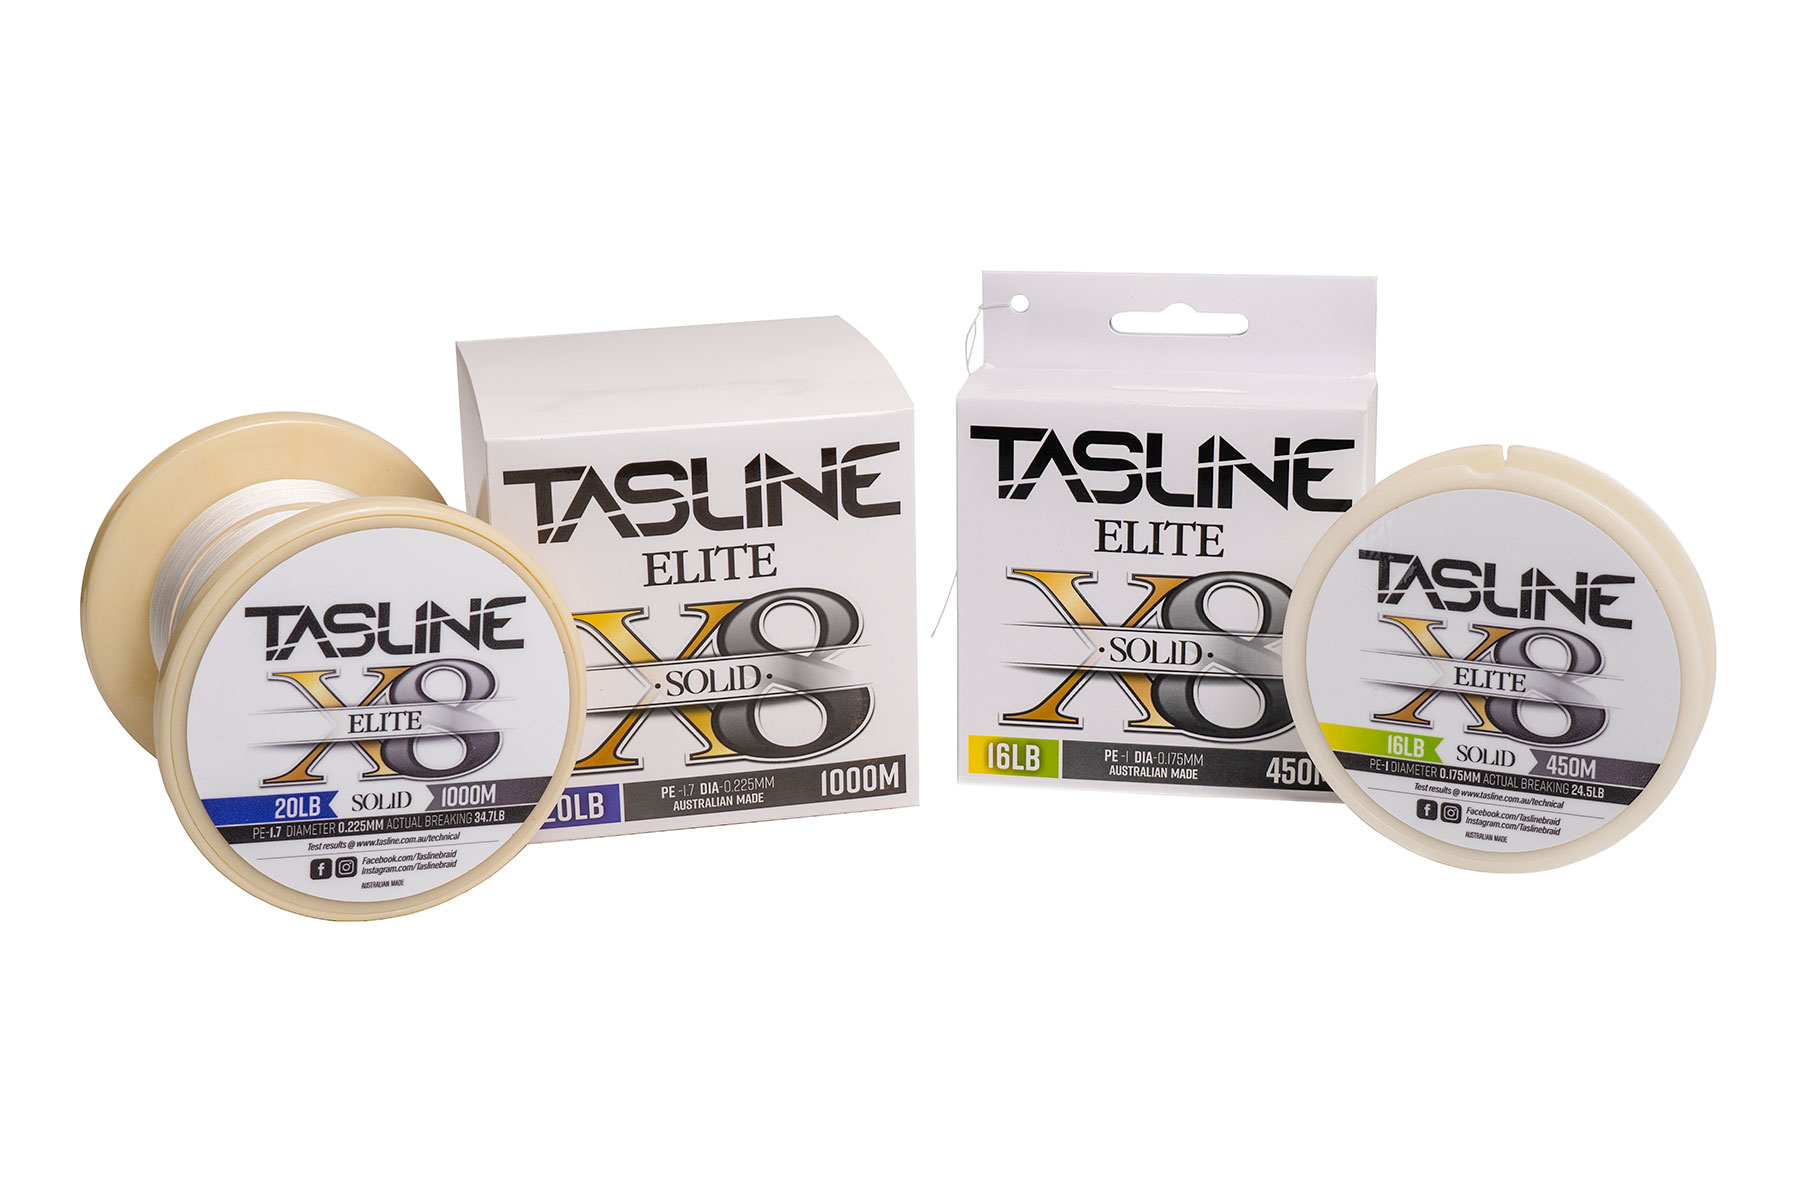 Tasline Elite White X8 Braid - Fergo's Tackle World